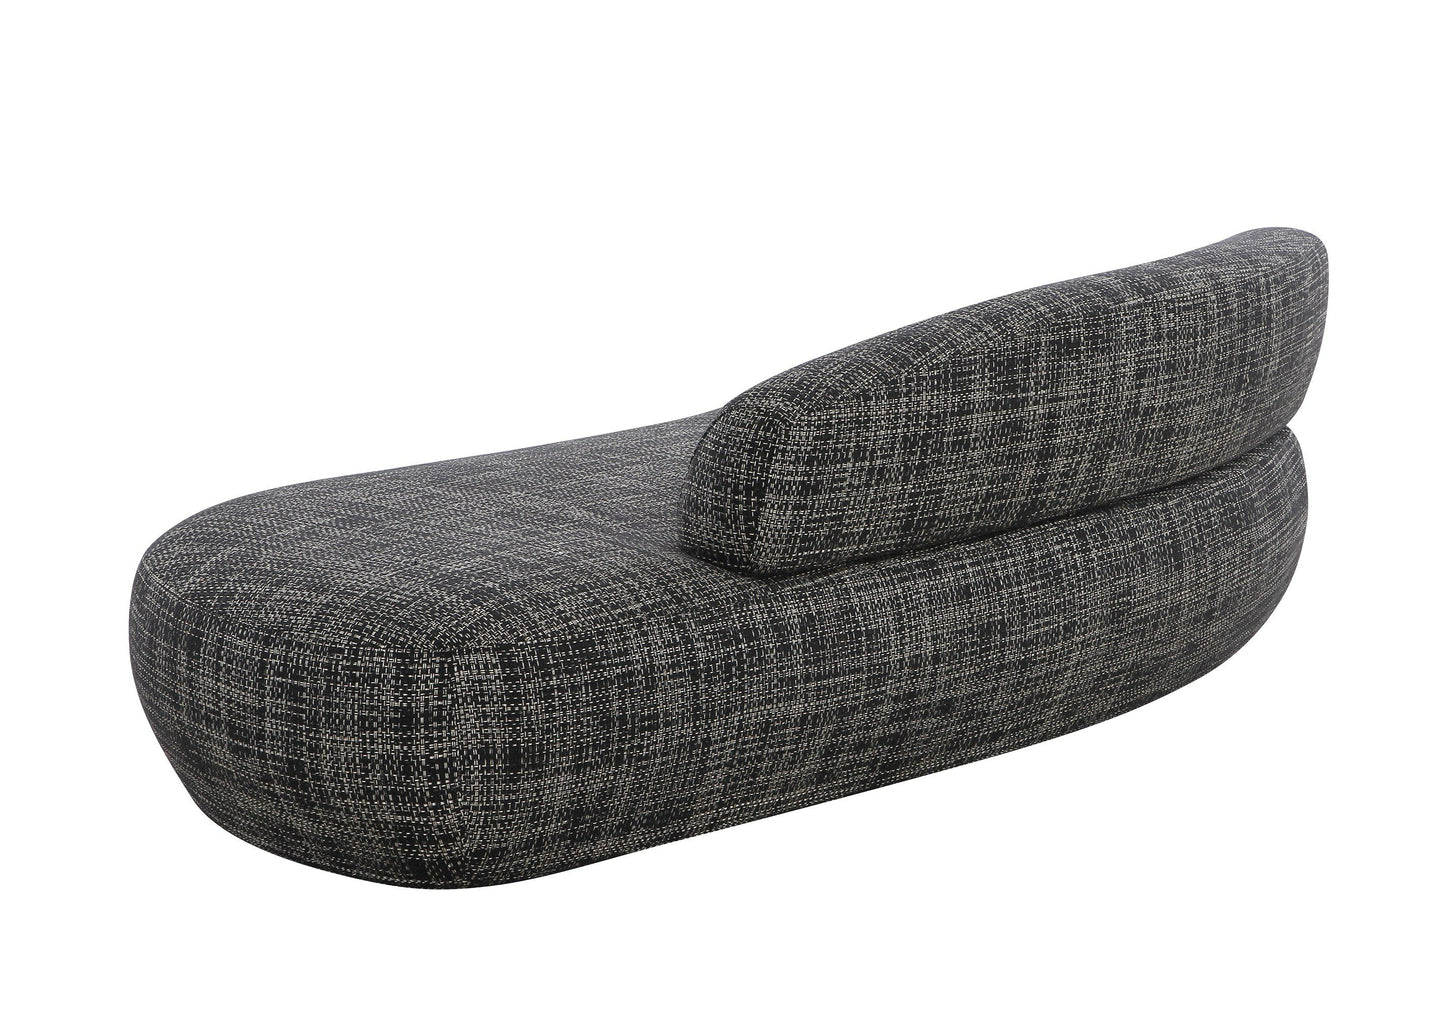 Divani Casa Lakota - Modern Dark Grey Fabric Curved Sectional Sofa